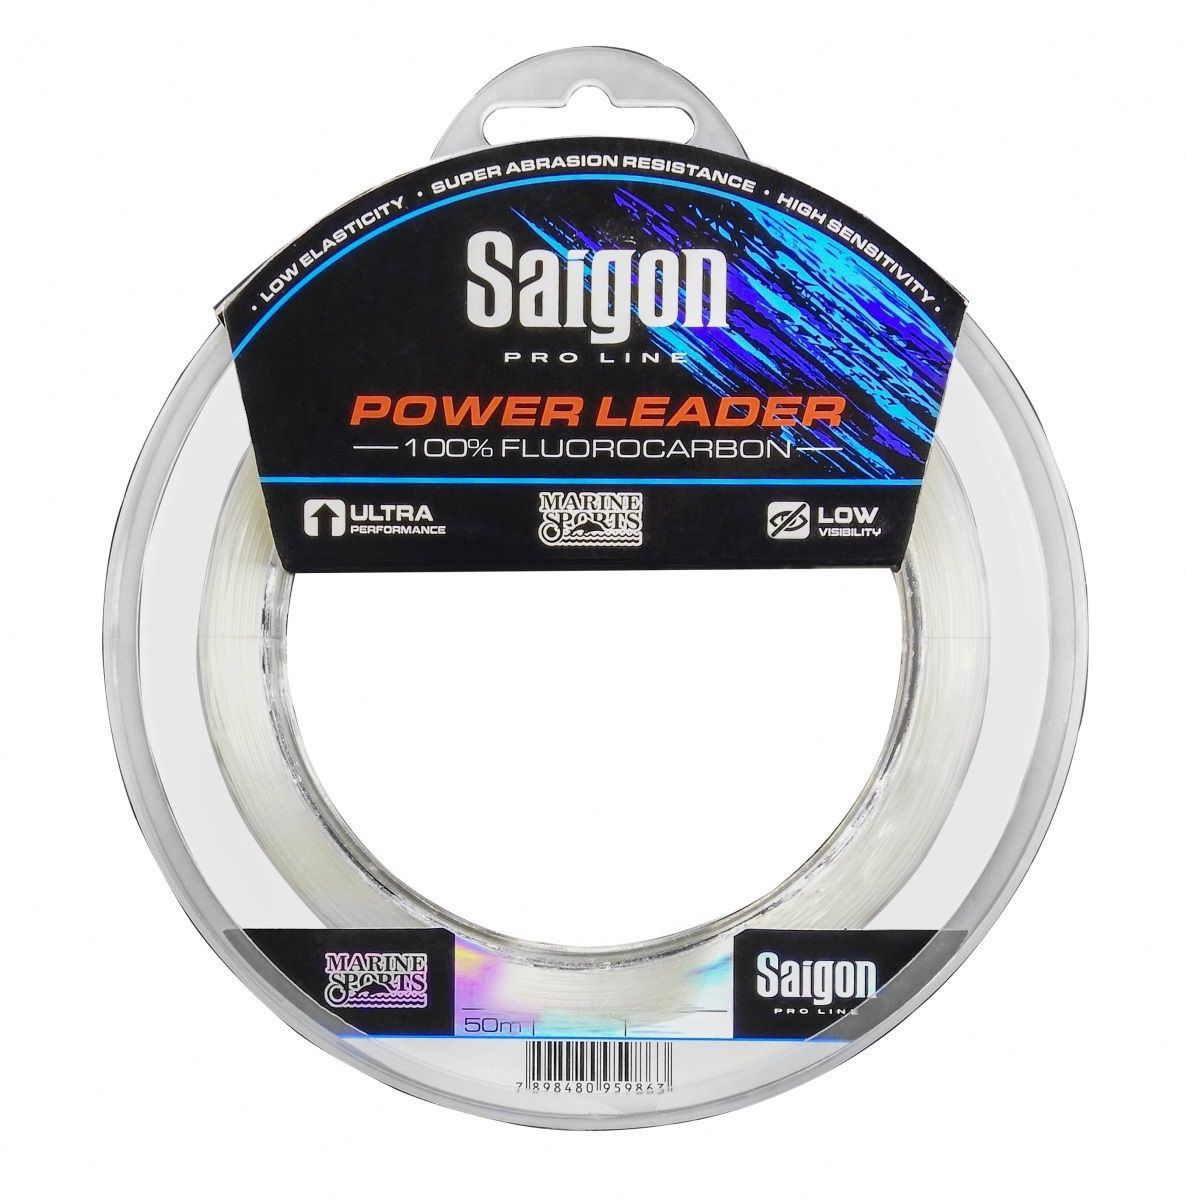 Linha Saigon Pro Line Power Leader 100% Fluorcarbon 0,63mm 45Lbs/20,4kg - 50 Metros  - Life Pesca - Sua loja de Pesca, Camping e Lazer